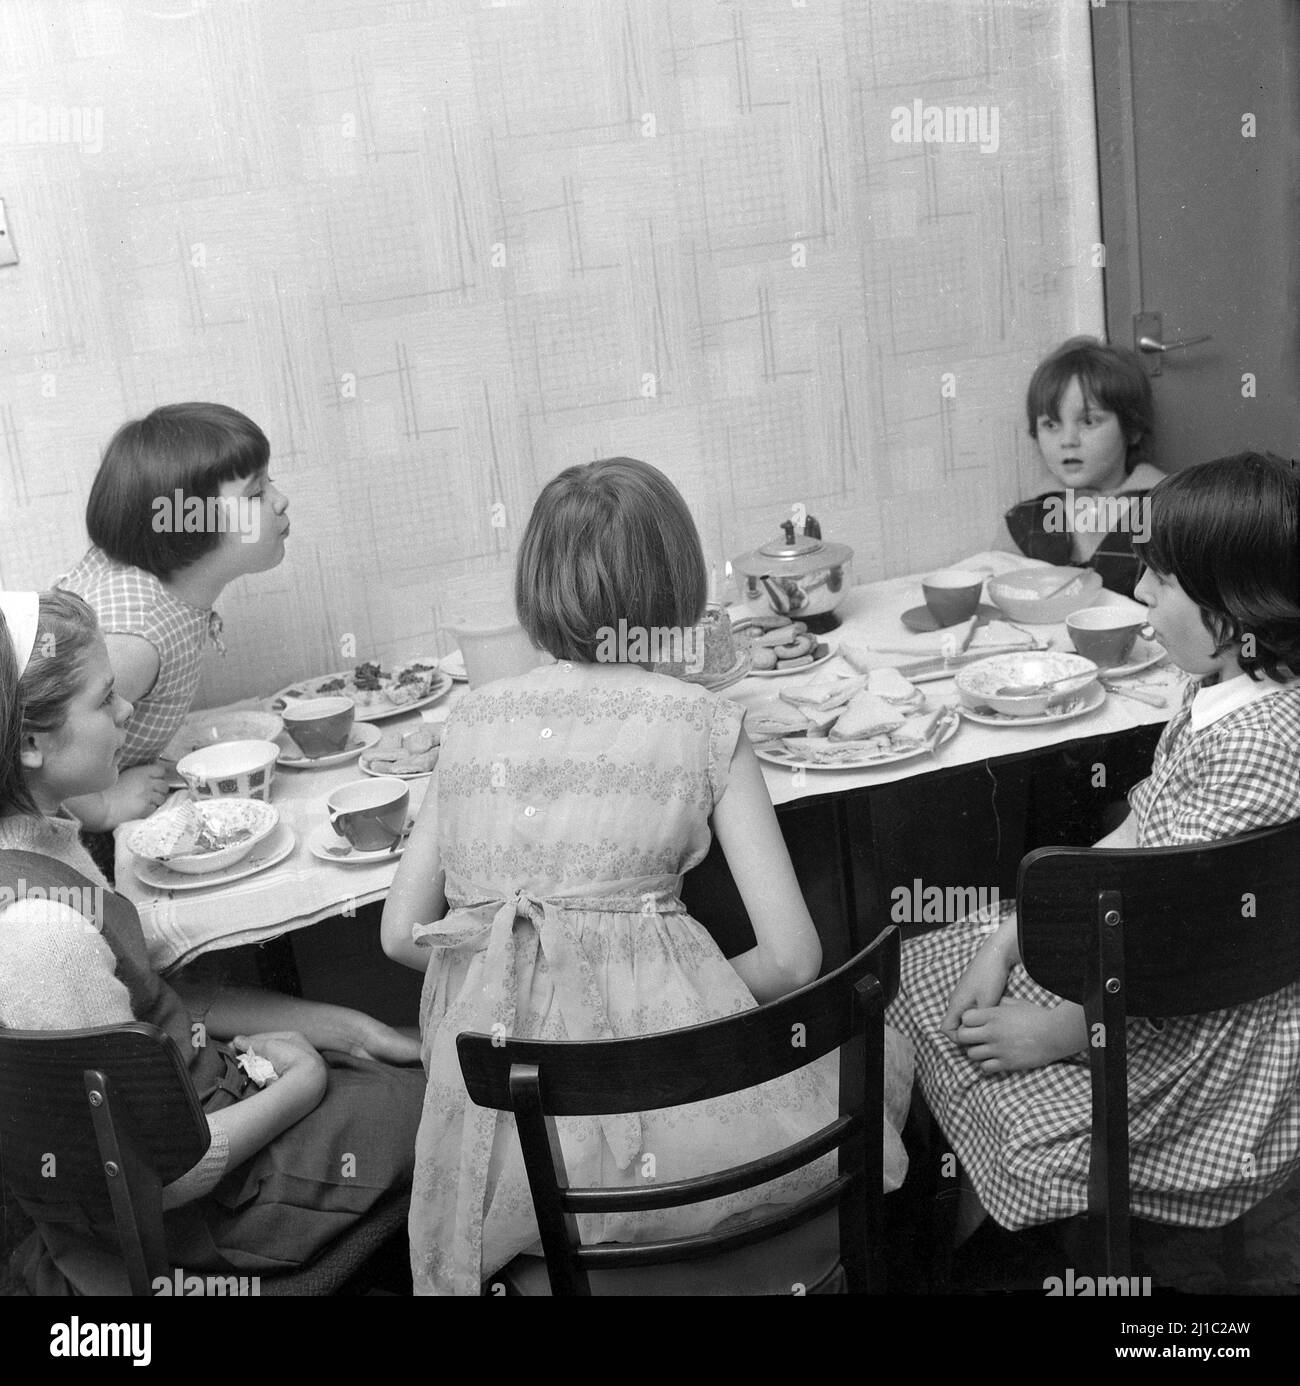 1960s, historique, fête de thé d'anniversaire, cinq jeunes filles s'asseyaient autour d'une table de cuisine, l'une d'entre elles se penchait pour souffler les bougies sur le gâteau, Manchester, Angleterre, Royaume-Uni. Banque D'Images